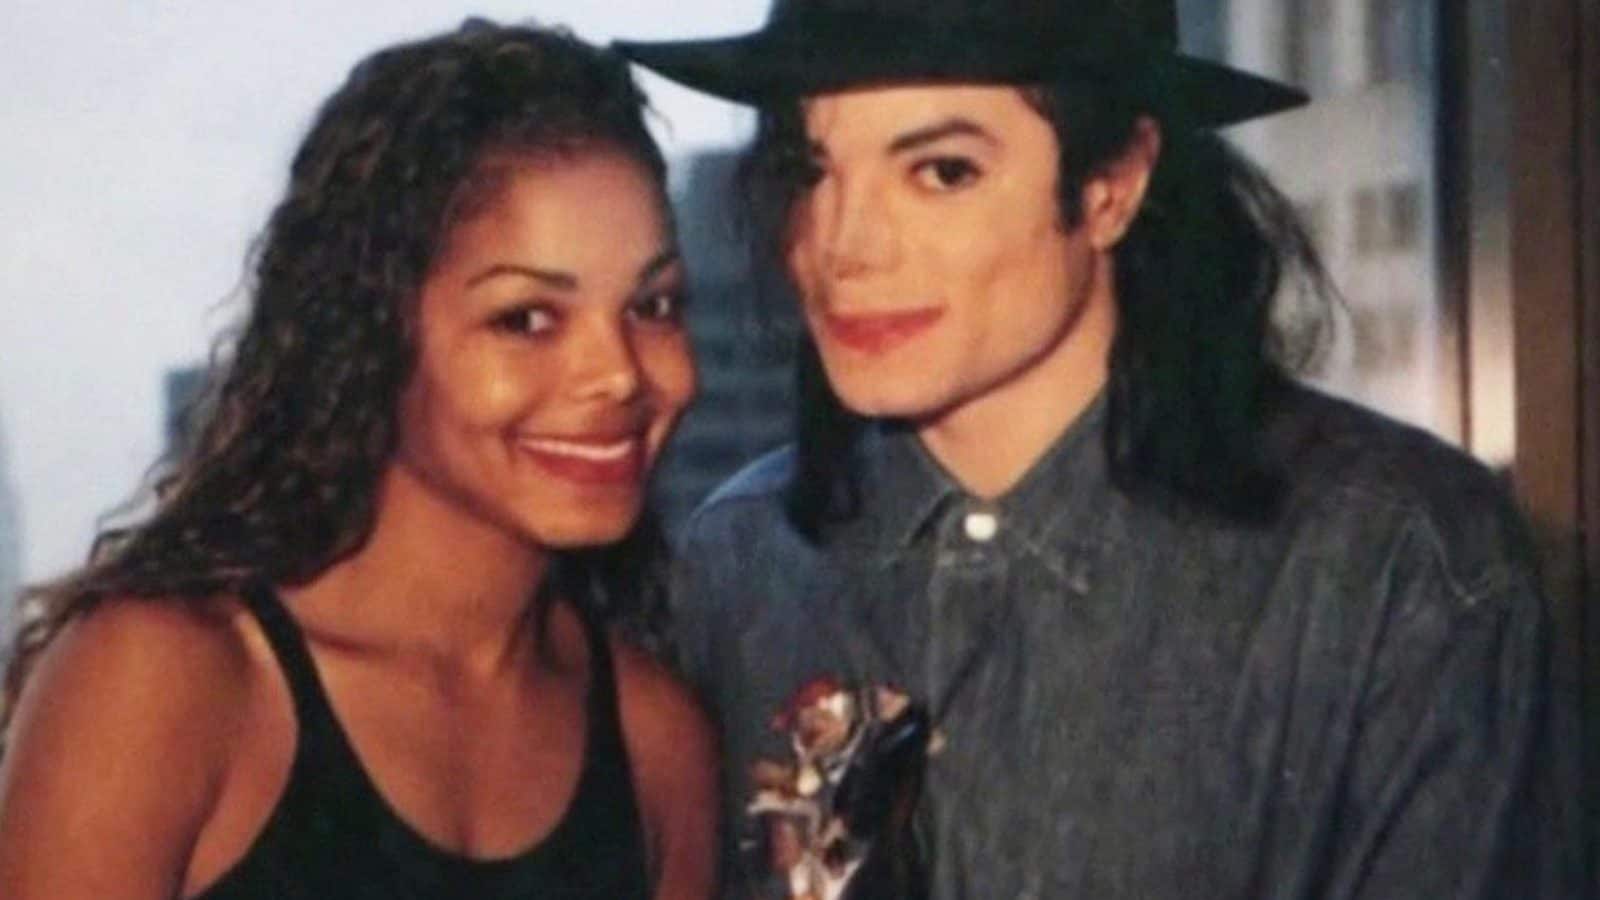 Janet Jackson recuerda al hermano Michael Jackson en el decimotercer aniversario de su muerte;  Publica fotos antiguas